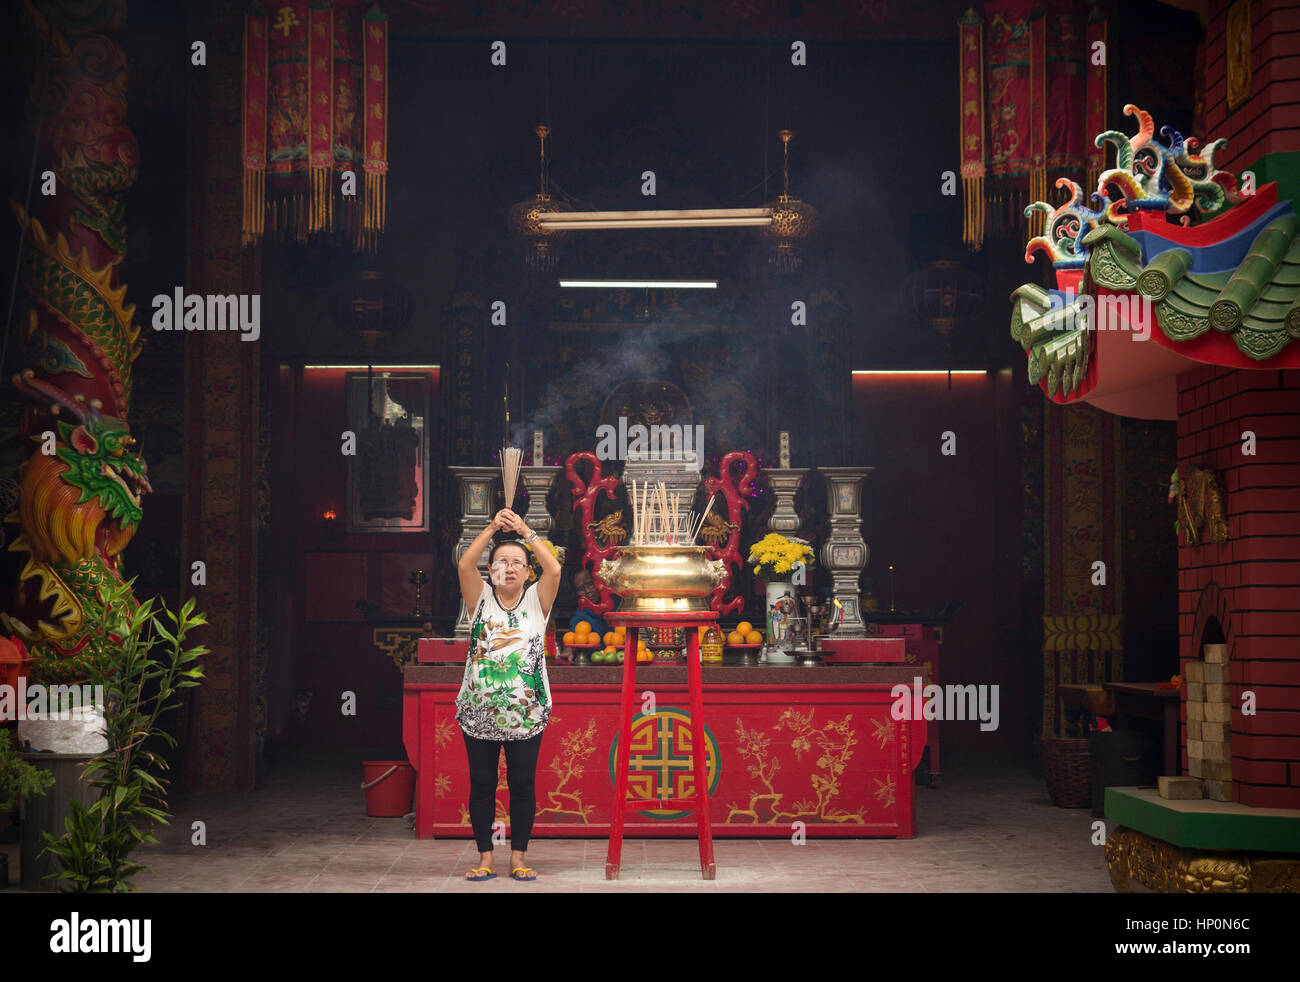 Kuala Lumpur, Malesia - 9 novembre: donna bruciare bastoncini di incenso per gli antenati nel tempio cinese il 9 novembre 2014 a Kuala Lumpur in Malesia Foto Stock